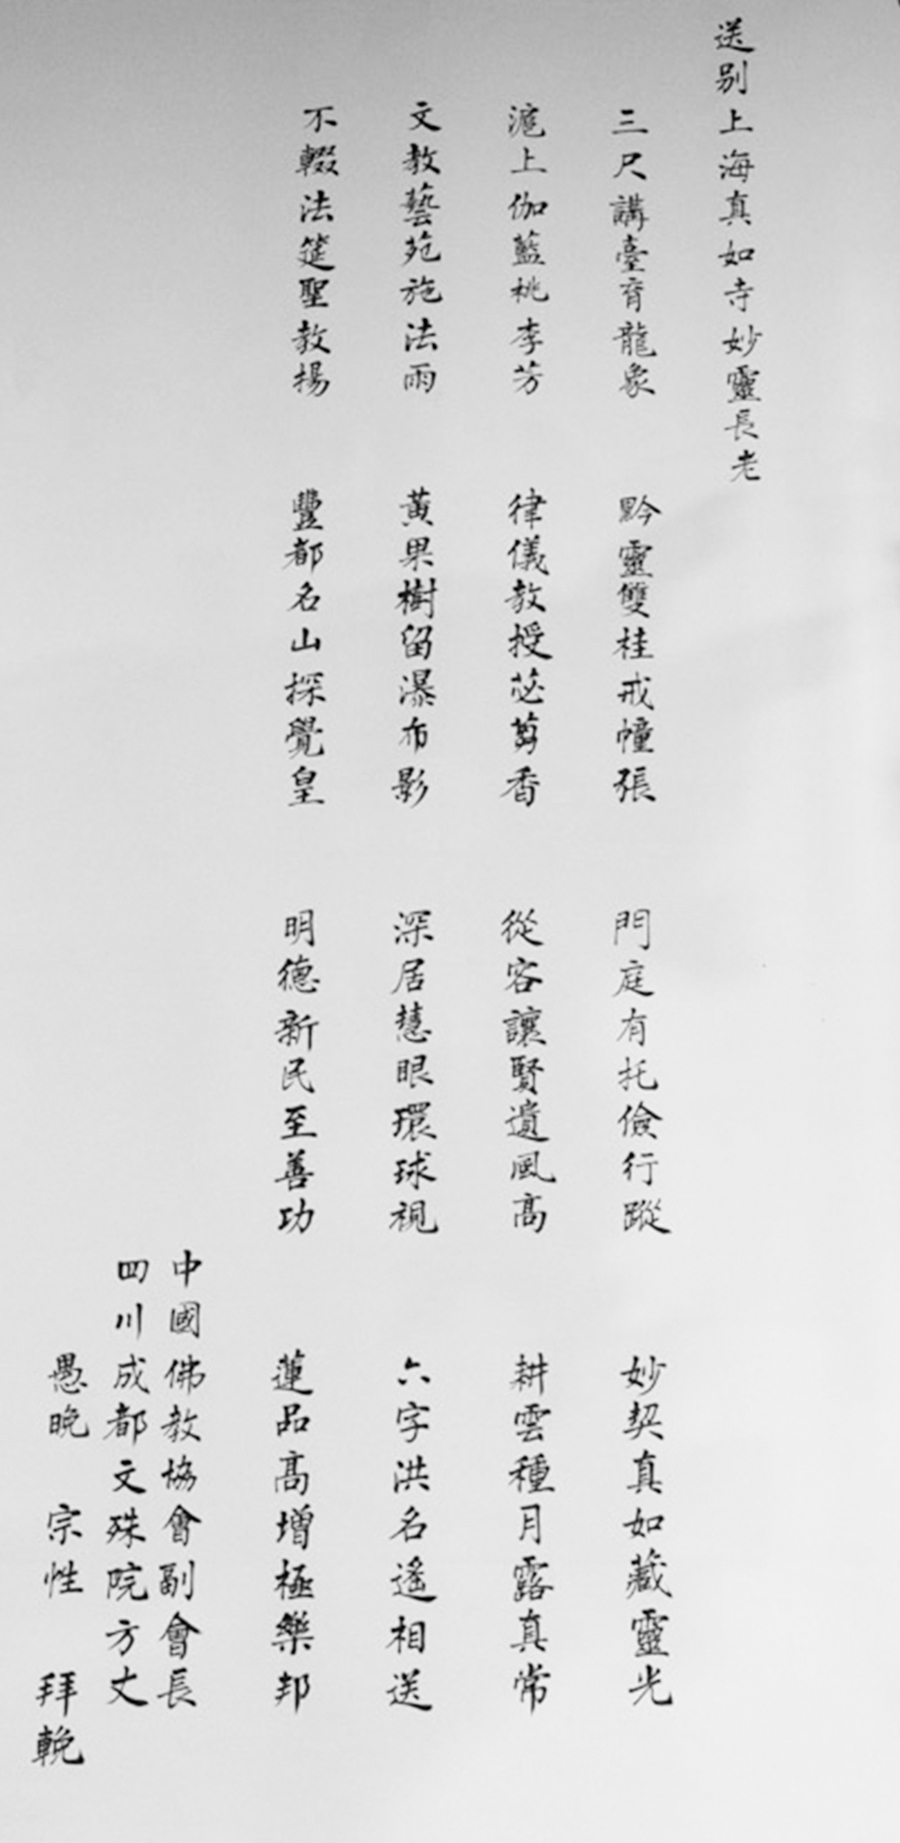 中国佛教协会副会长、成都文殊院方丈宗性法师赋诗拜挽1.jpg